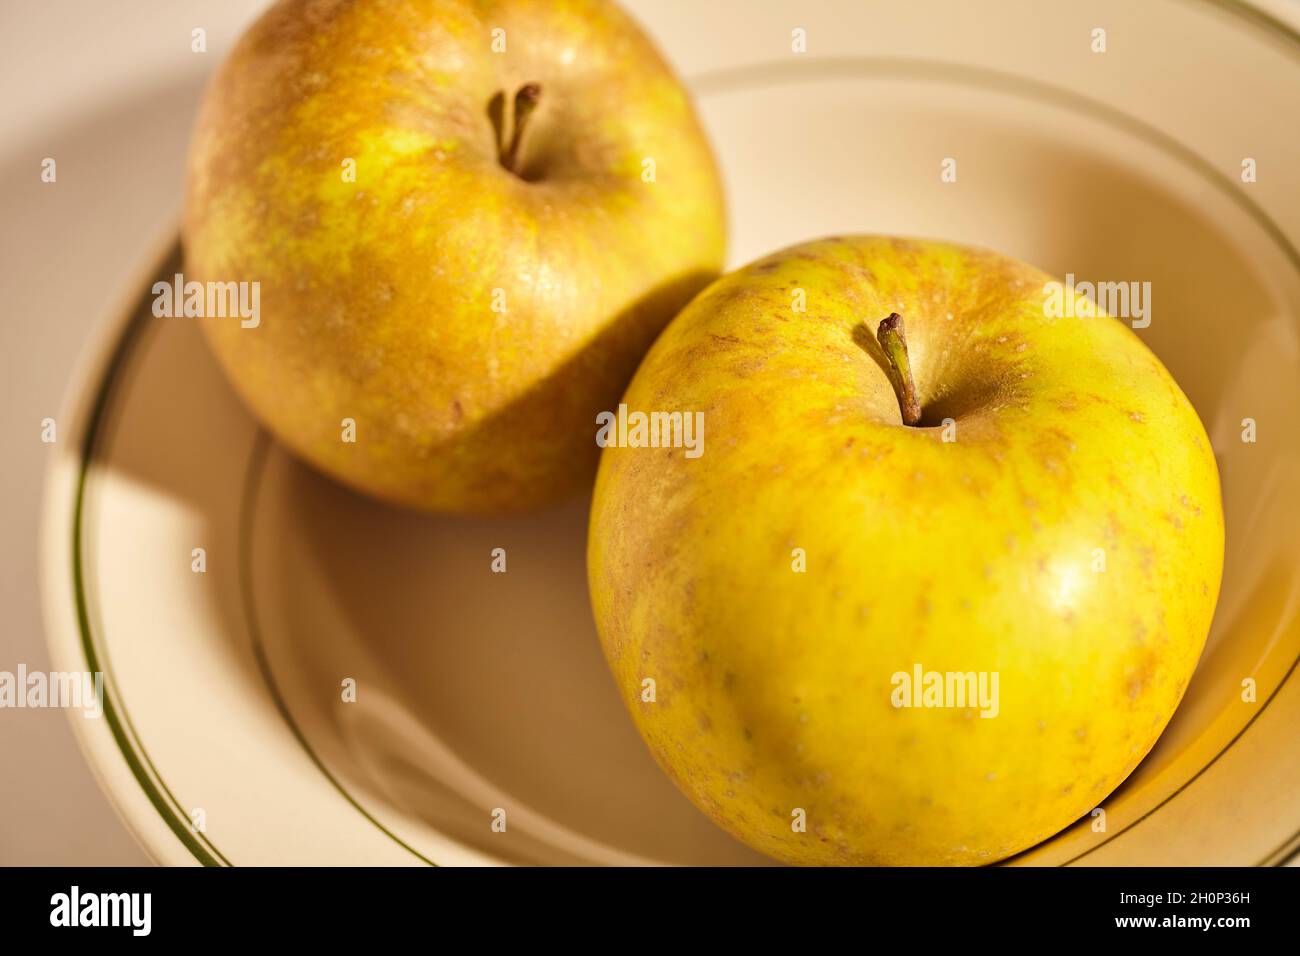 Roxbury Russet, una variedad de manzana de la herencia. Foto de stock